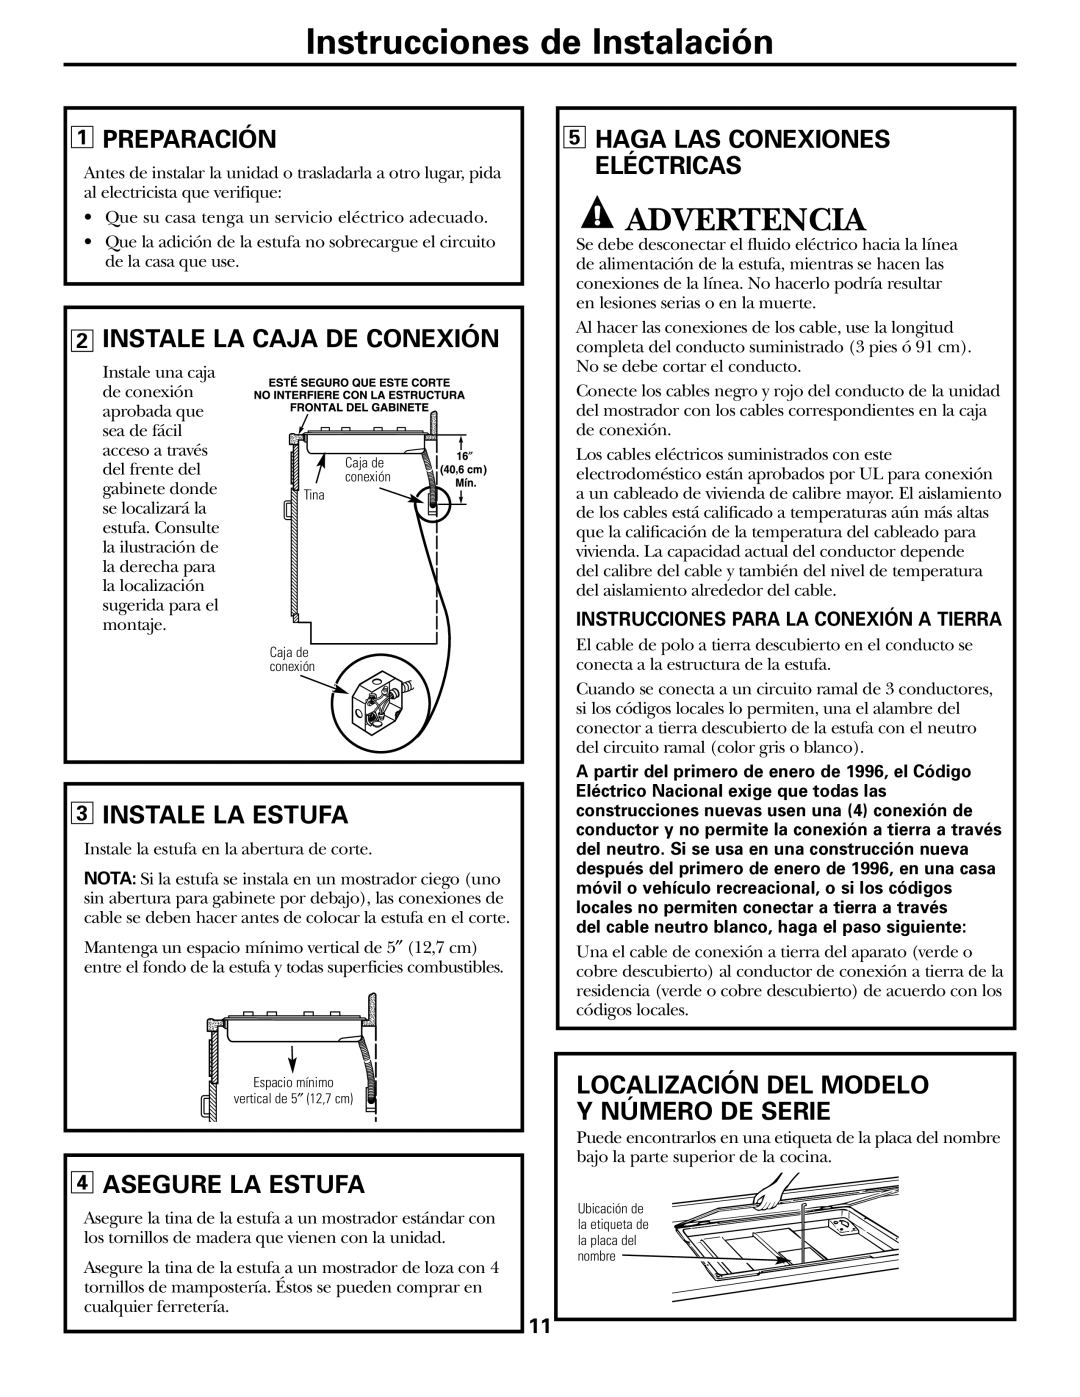 GE JP328 JP626 owner manual Advertencia, Preparación, Instale La Caja De Conexión, Instale La Estufa, Asegure La Estufa 